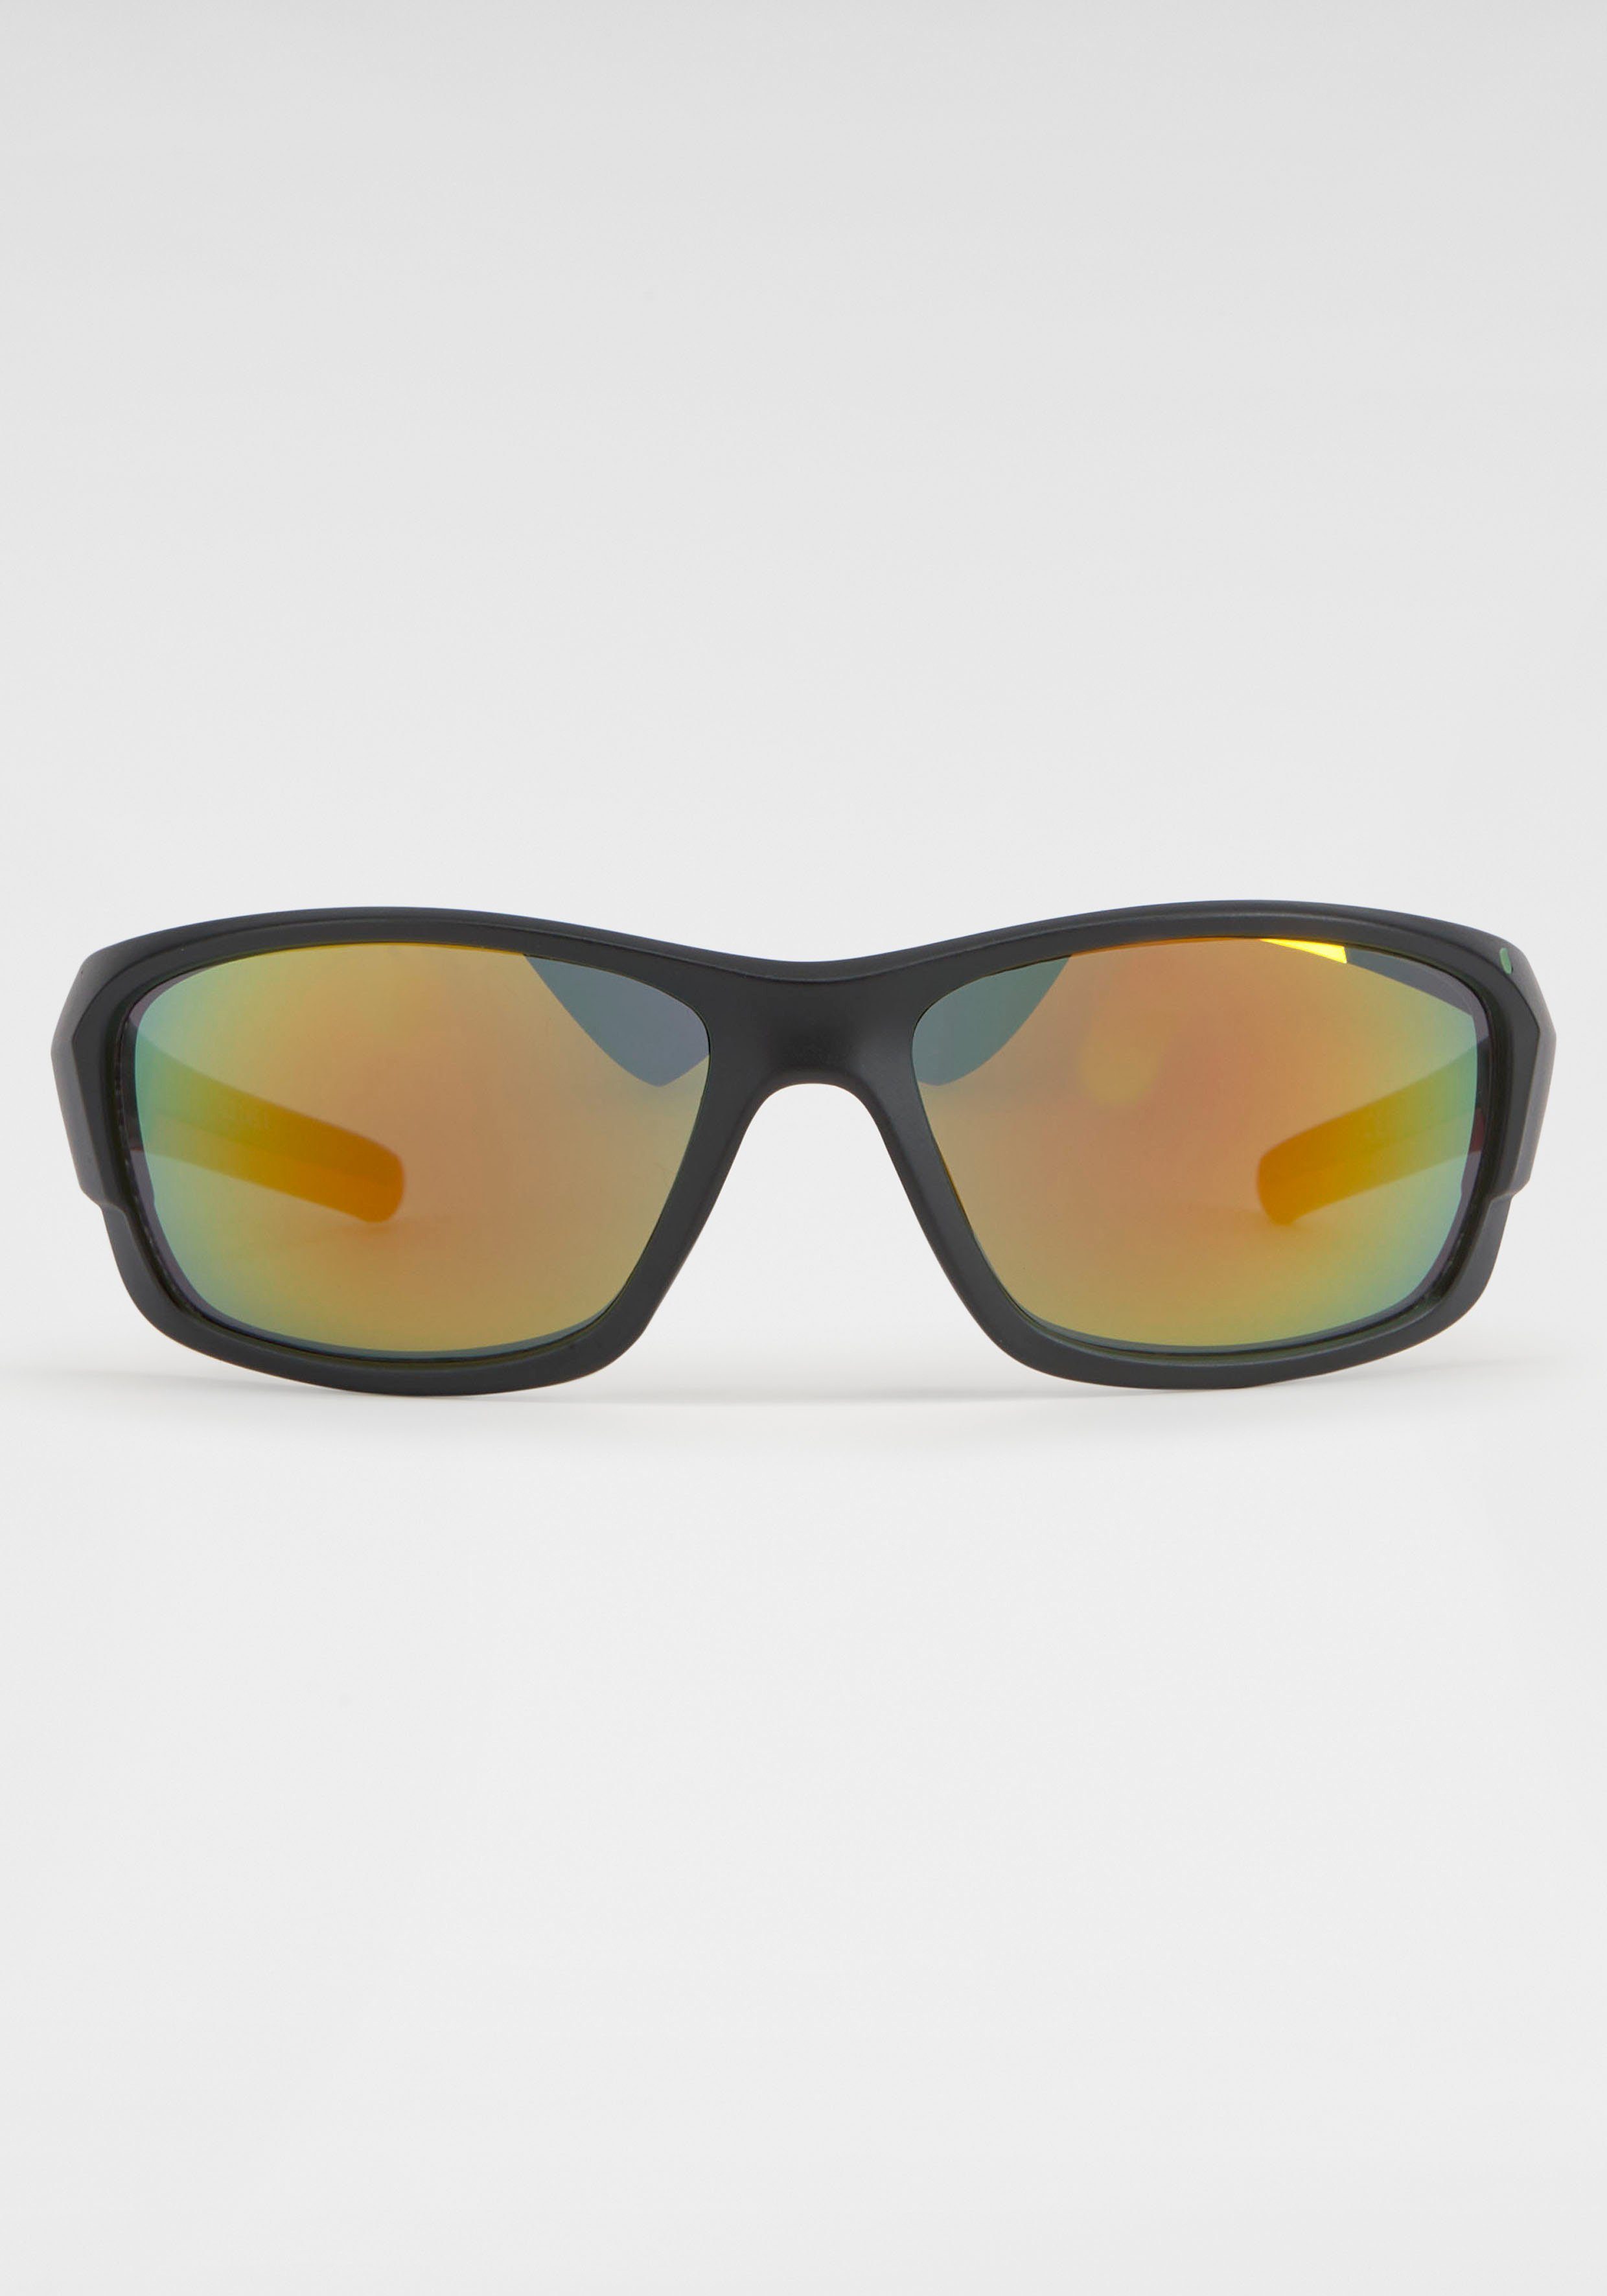 BACK BLACK IN mit Sonnenbrille Eyewear Gläsern verspiegelten